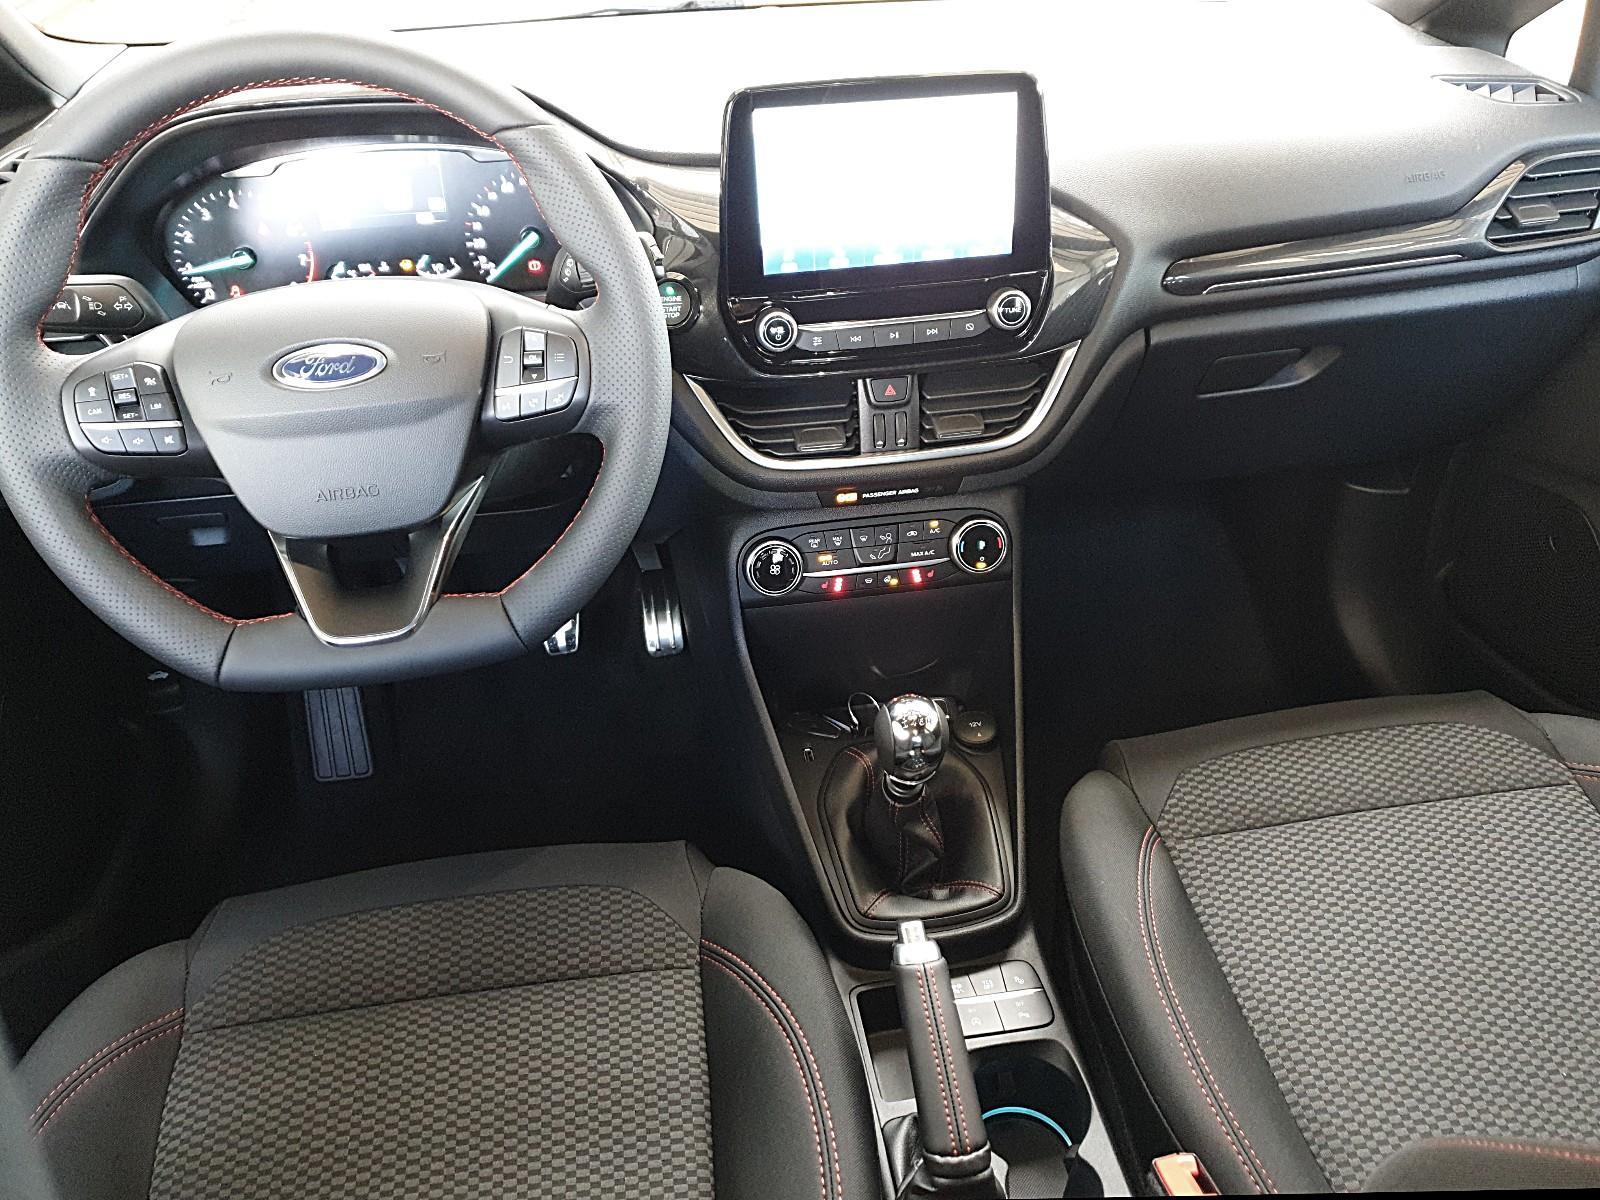 Ford Fiesta 1.0 EcoBoost Start-Stop SYNC Edition 5T Winterpaket Sitzheizung  Alufelgen Jahreswagen kaufen in Welzheim Preis 13390 eur - Int.Nr.: fy77435  VERKAUFT